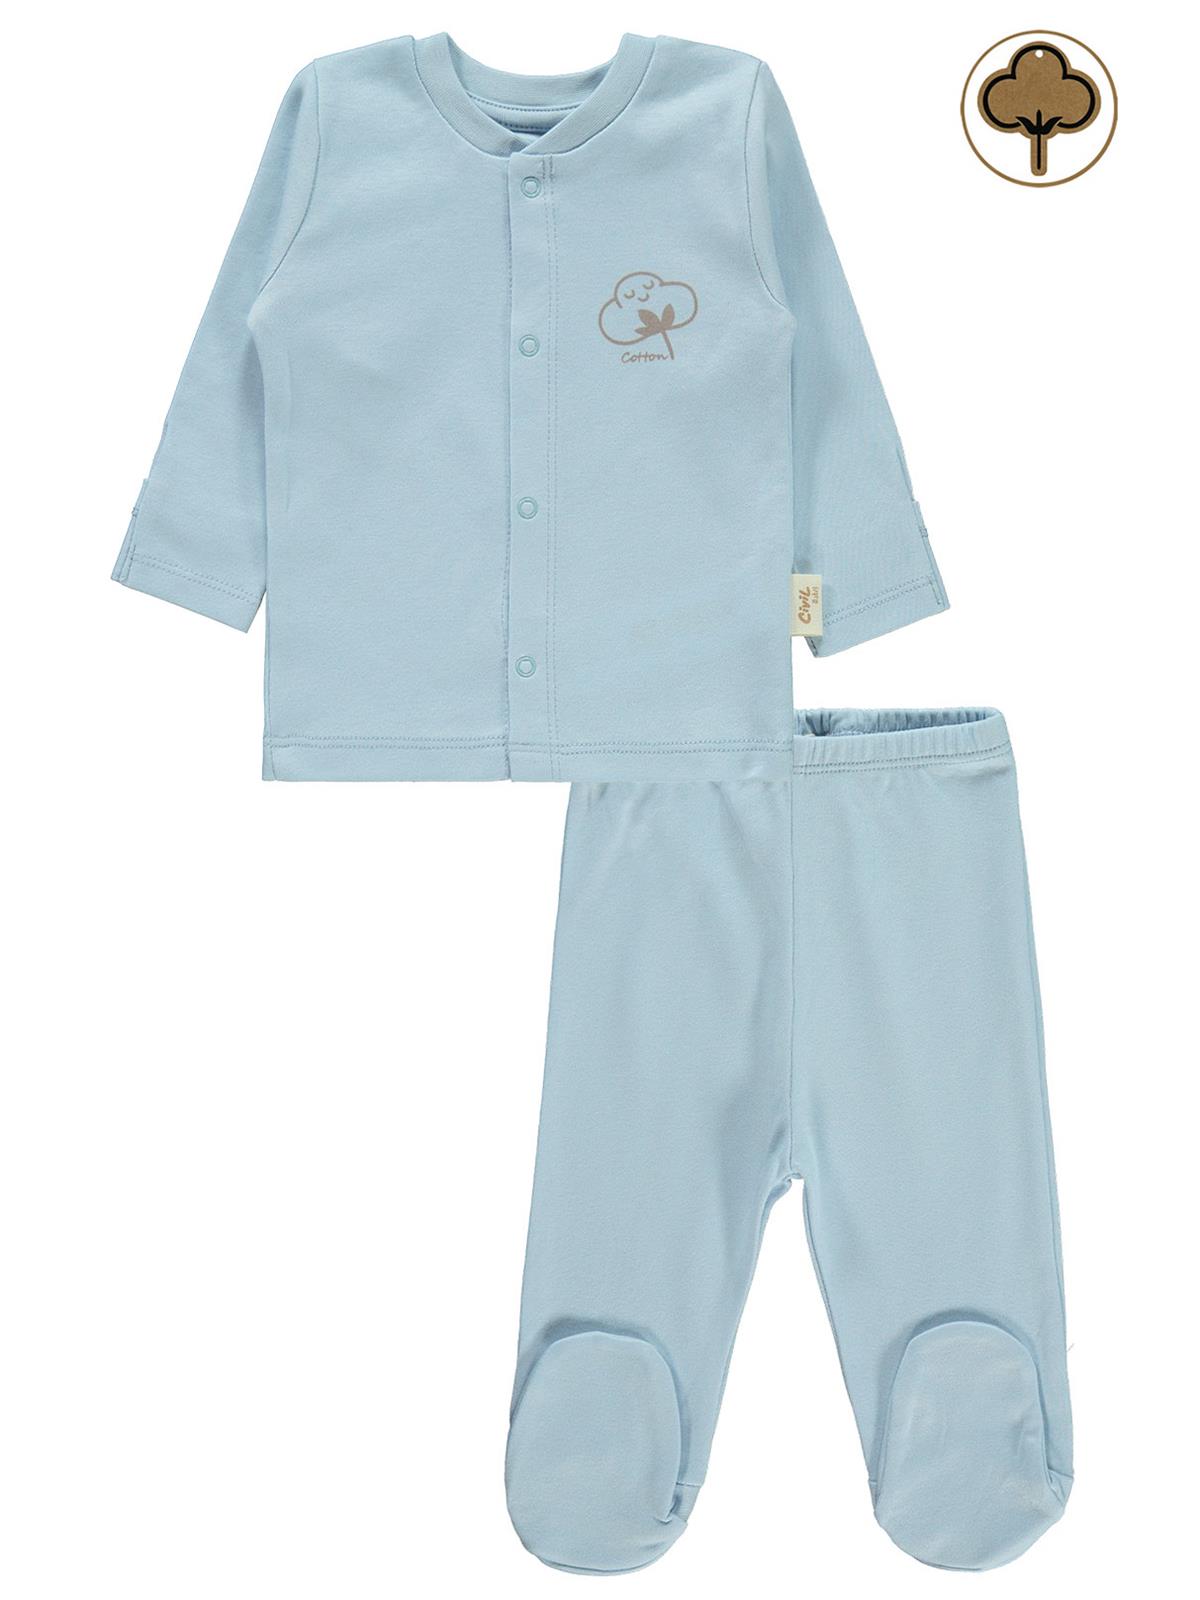 Civil Baby Bebek Organik Pijama Takımı 0-6 Ay Mavi